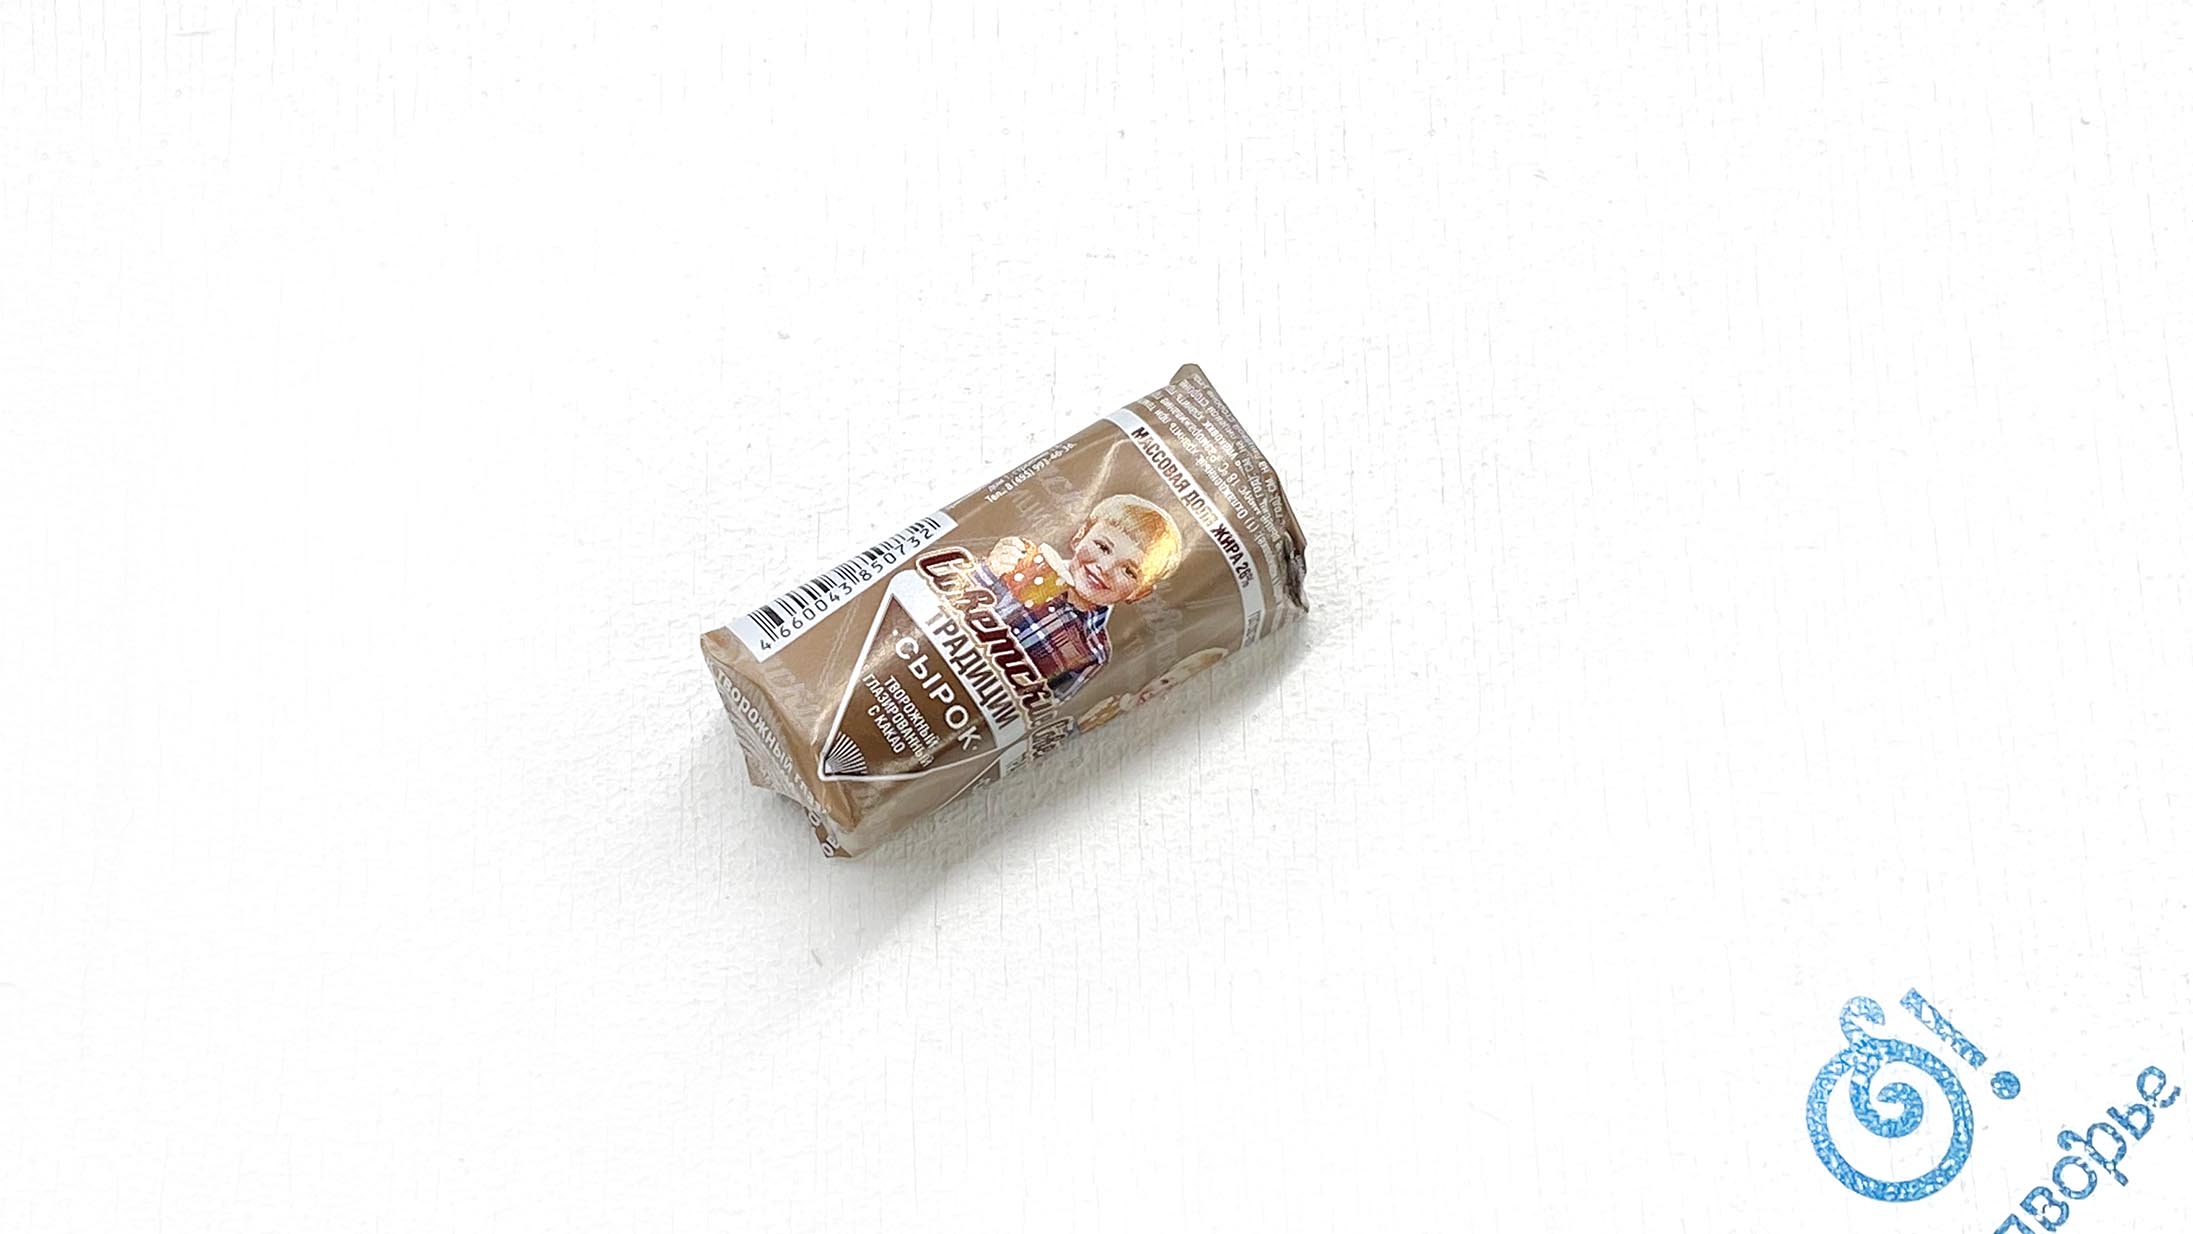 Творожный сырок с какао глазированный "Советские традиции" 26%, ООО «РостАгроКомплекс», 45 грамм,(Зл) 